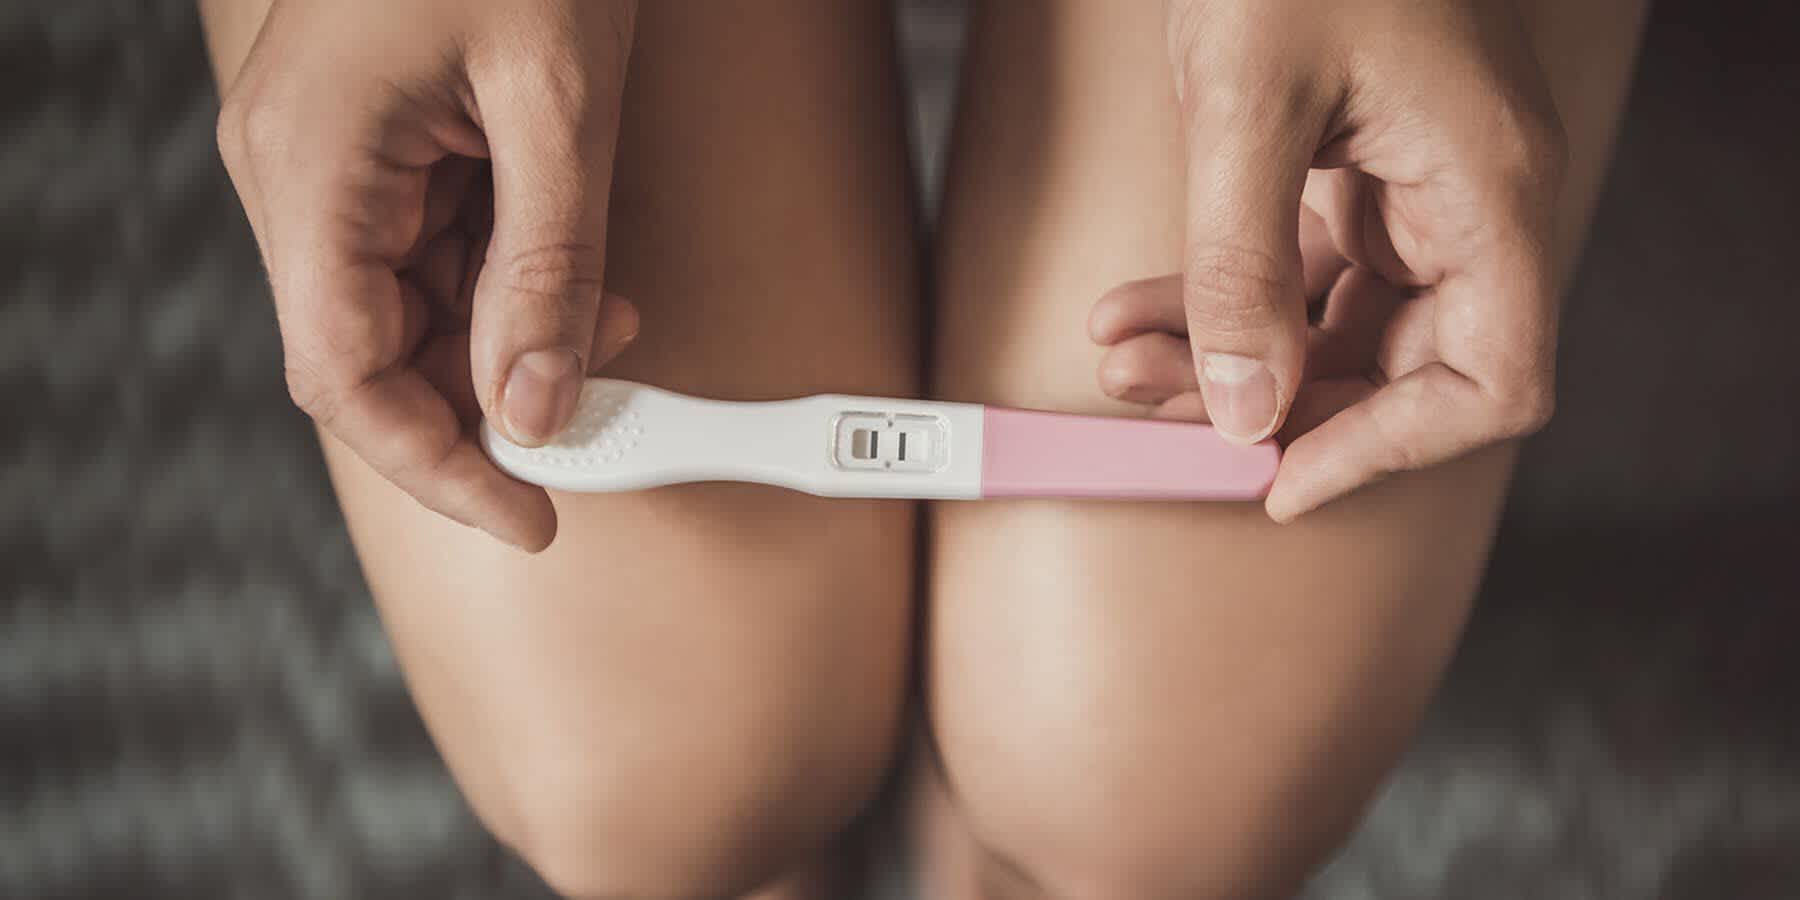 Getting pregnant: When are you most fertile? - Inito